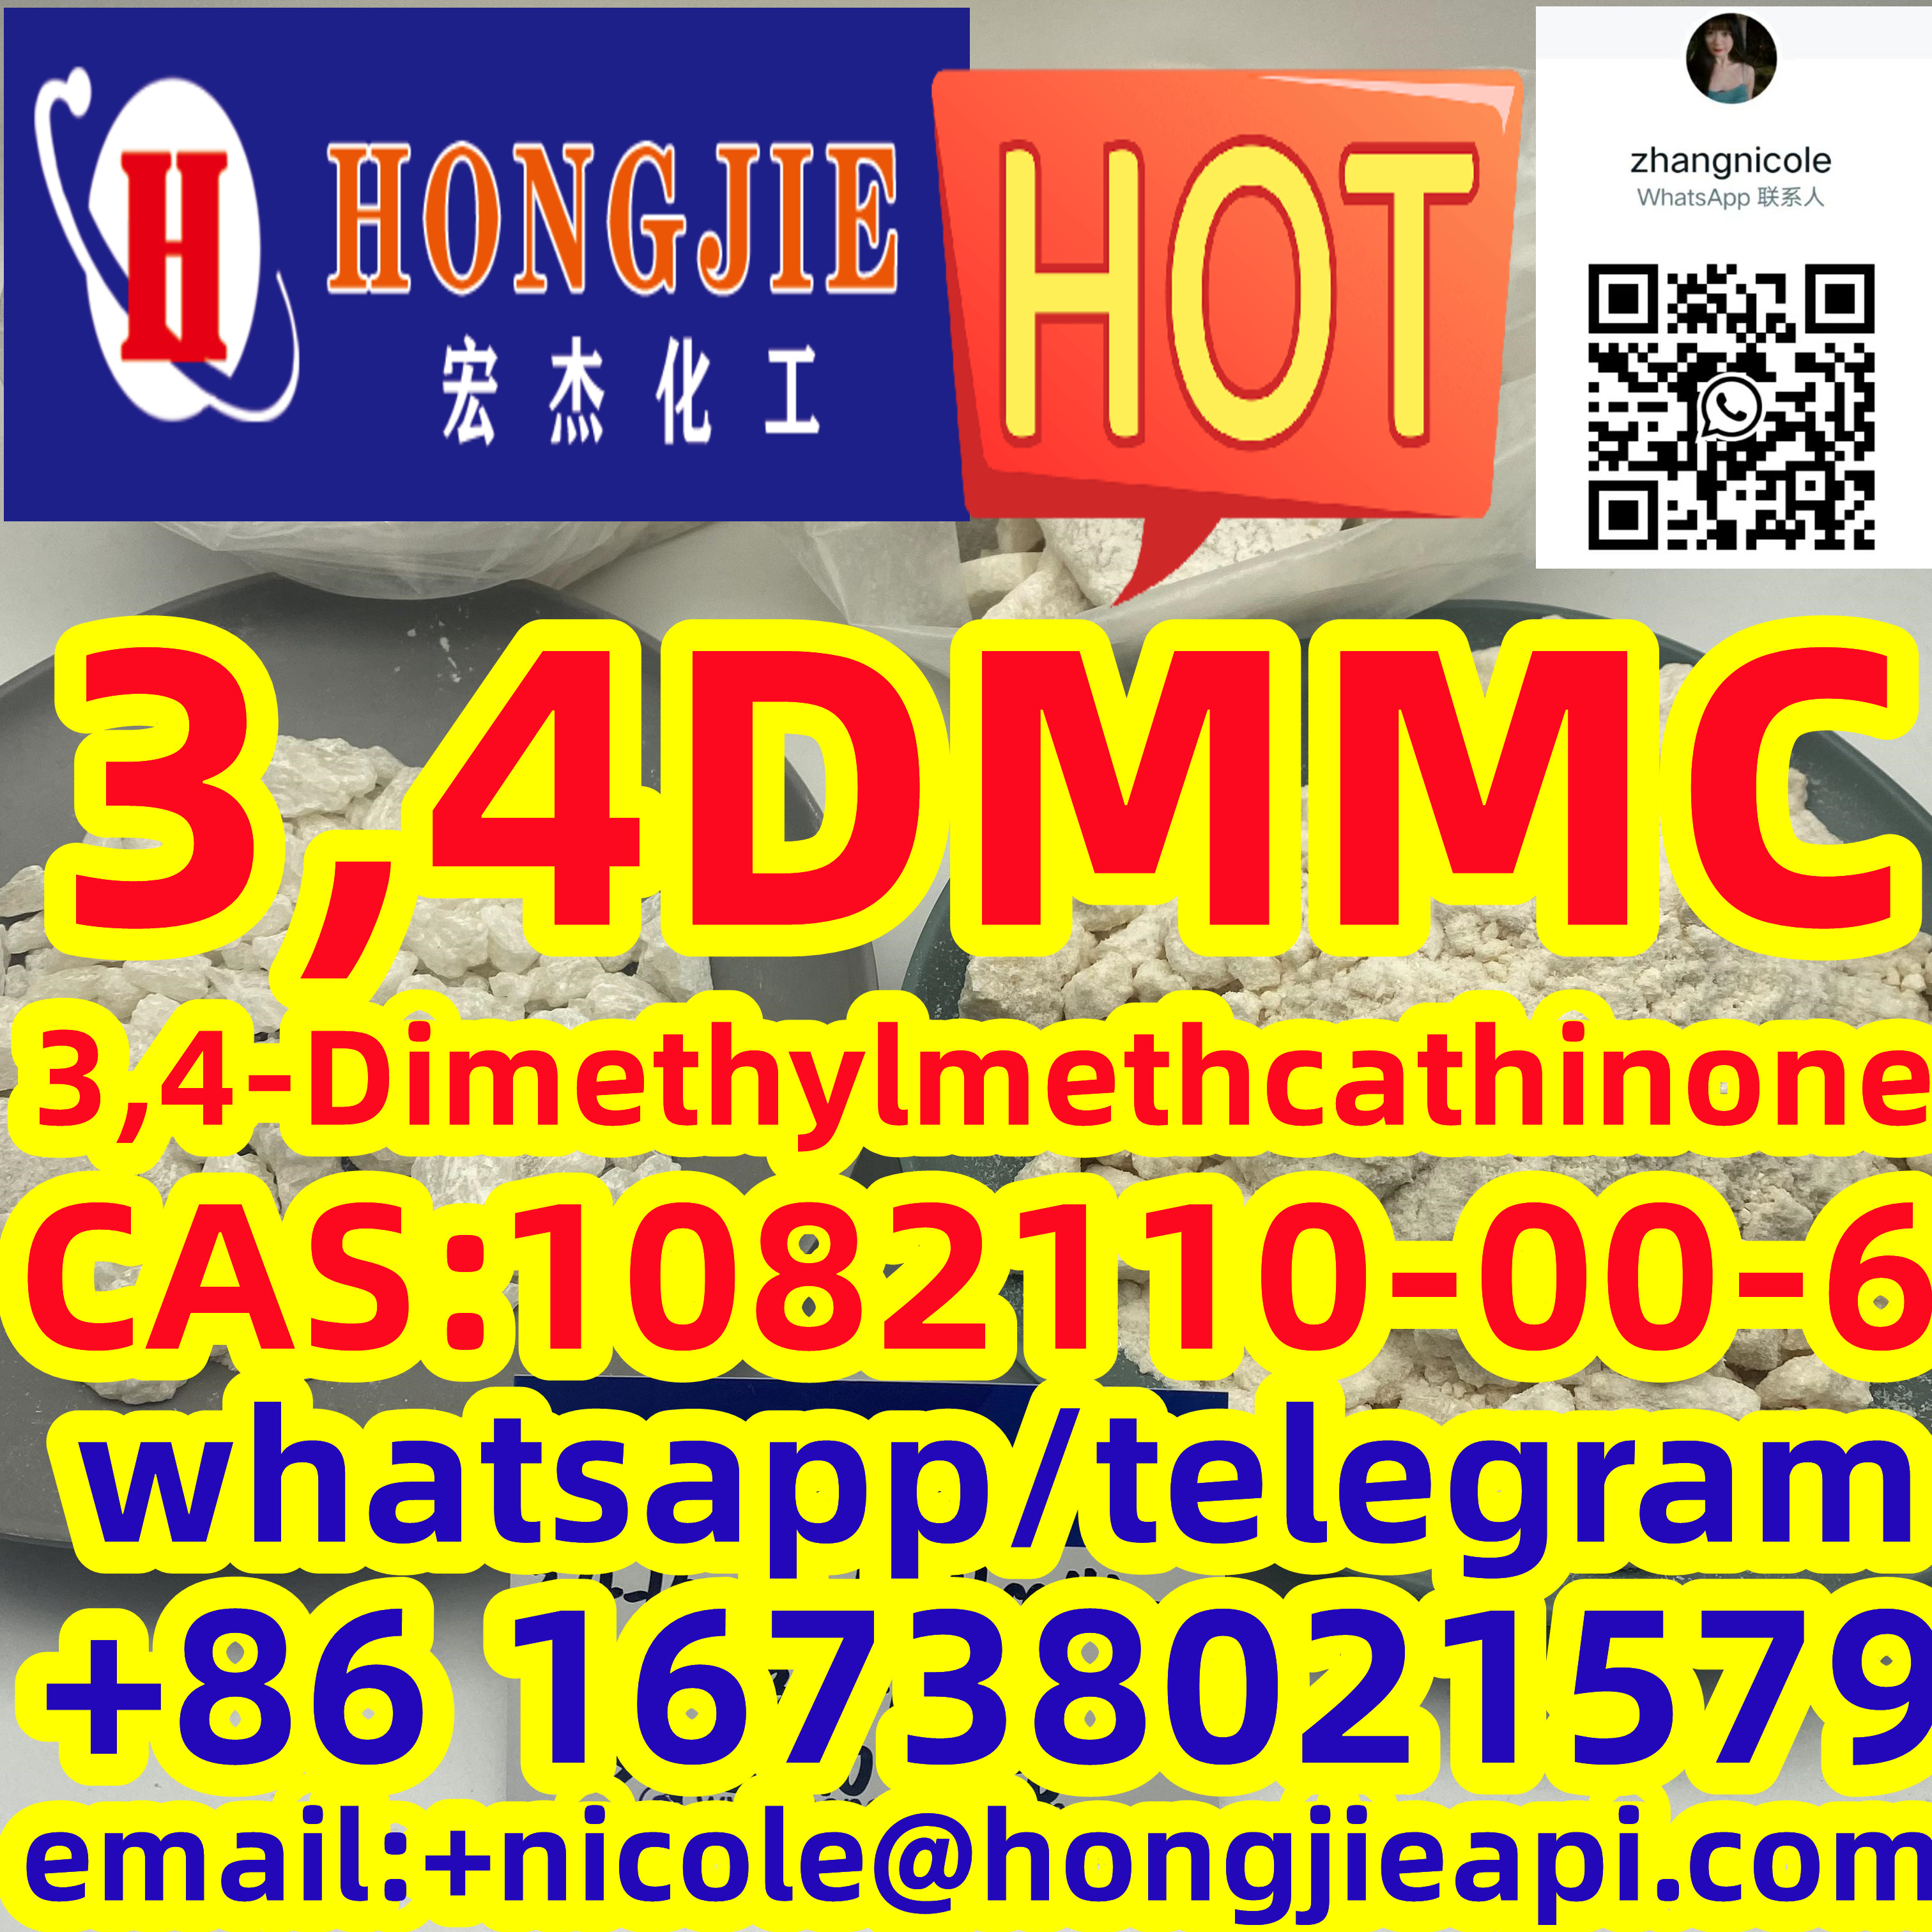 3,4DMMC 3,4-Dimethylmethcathinone CAS:1082110-00-6